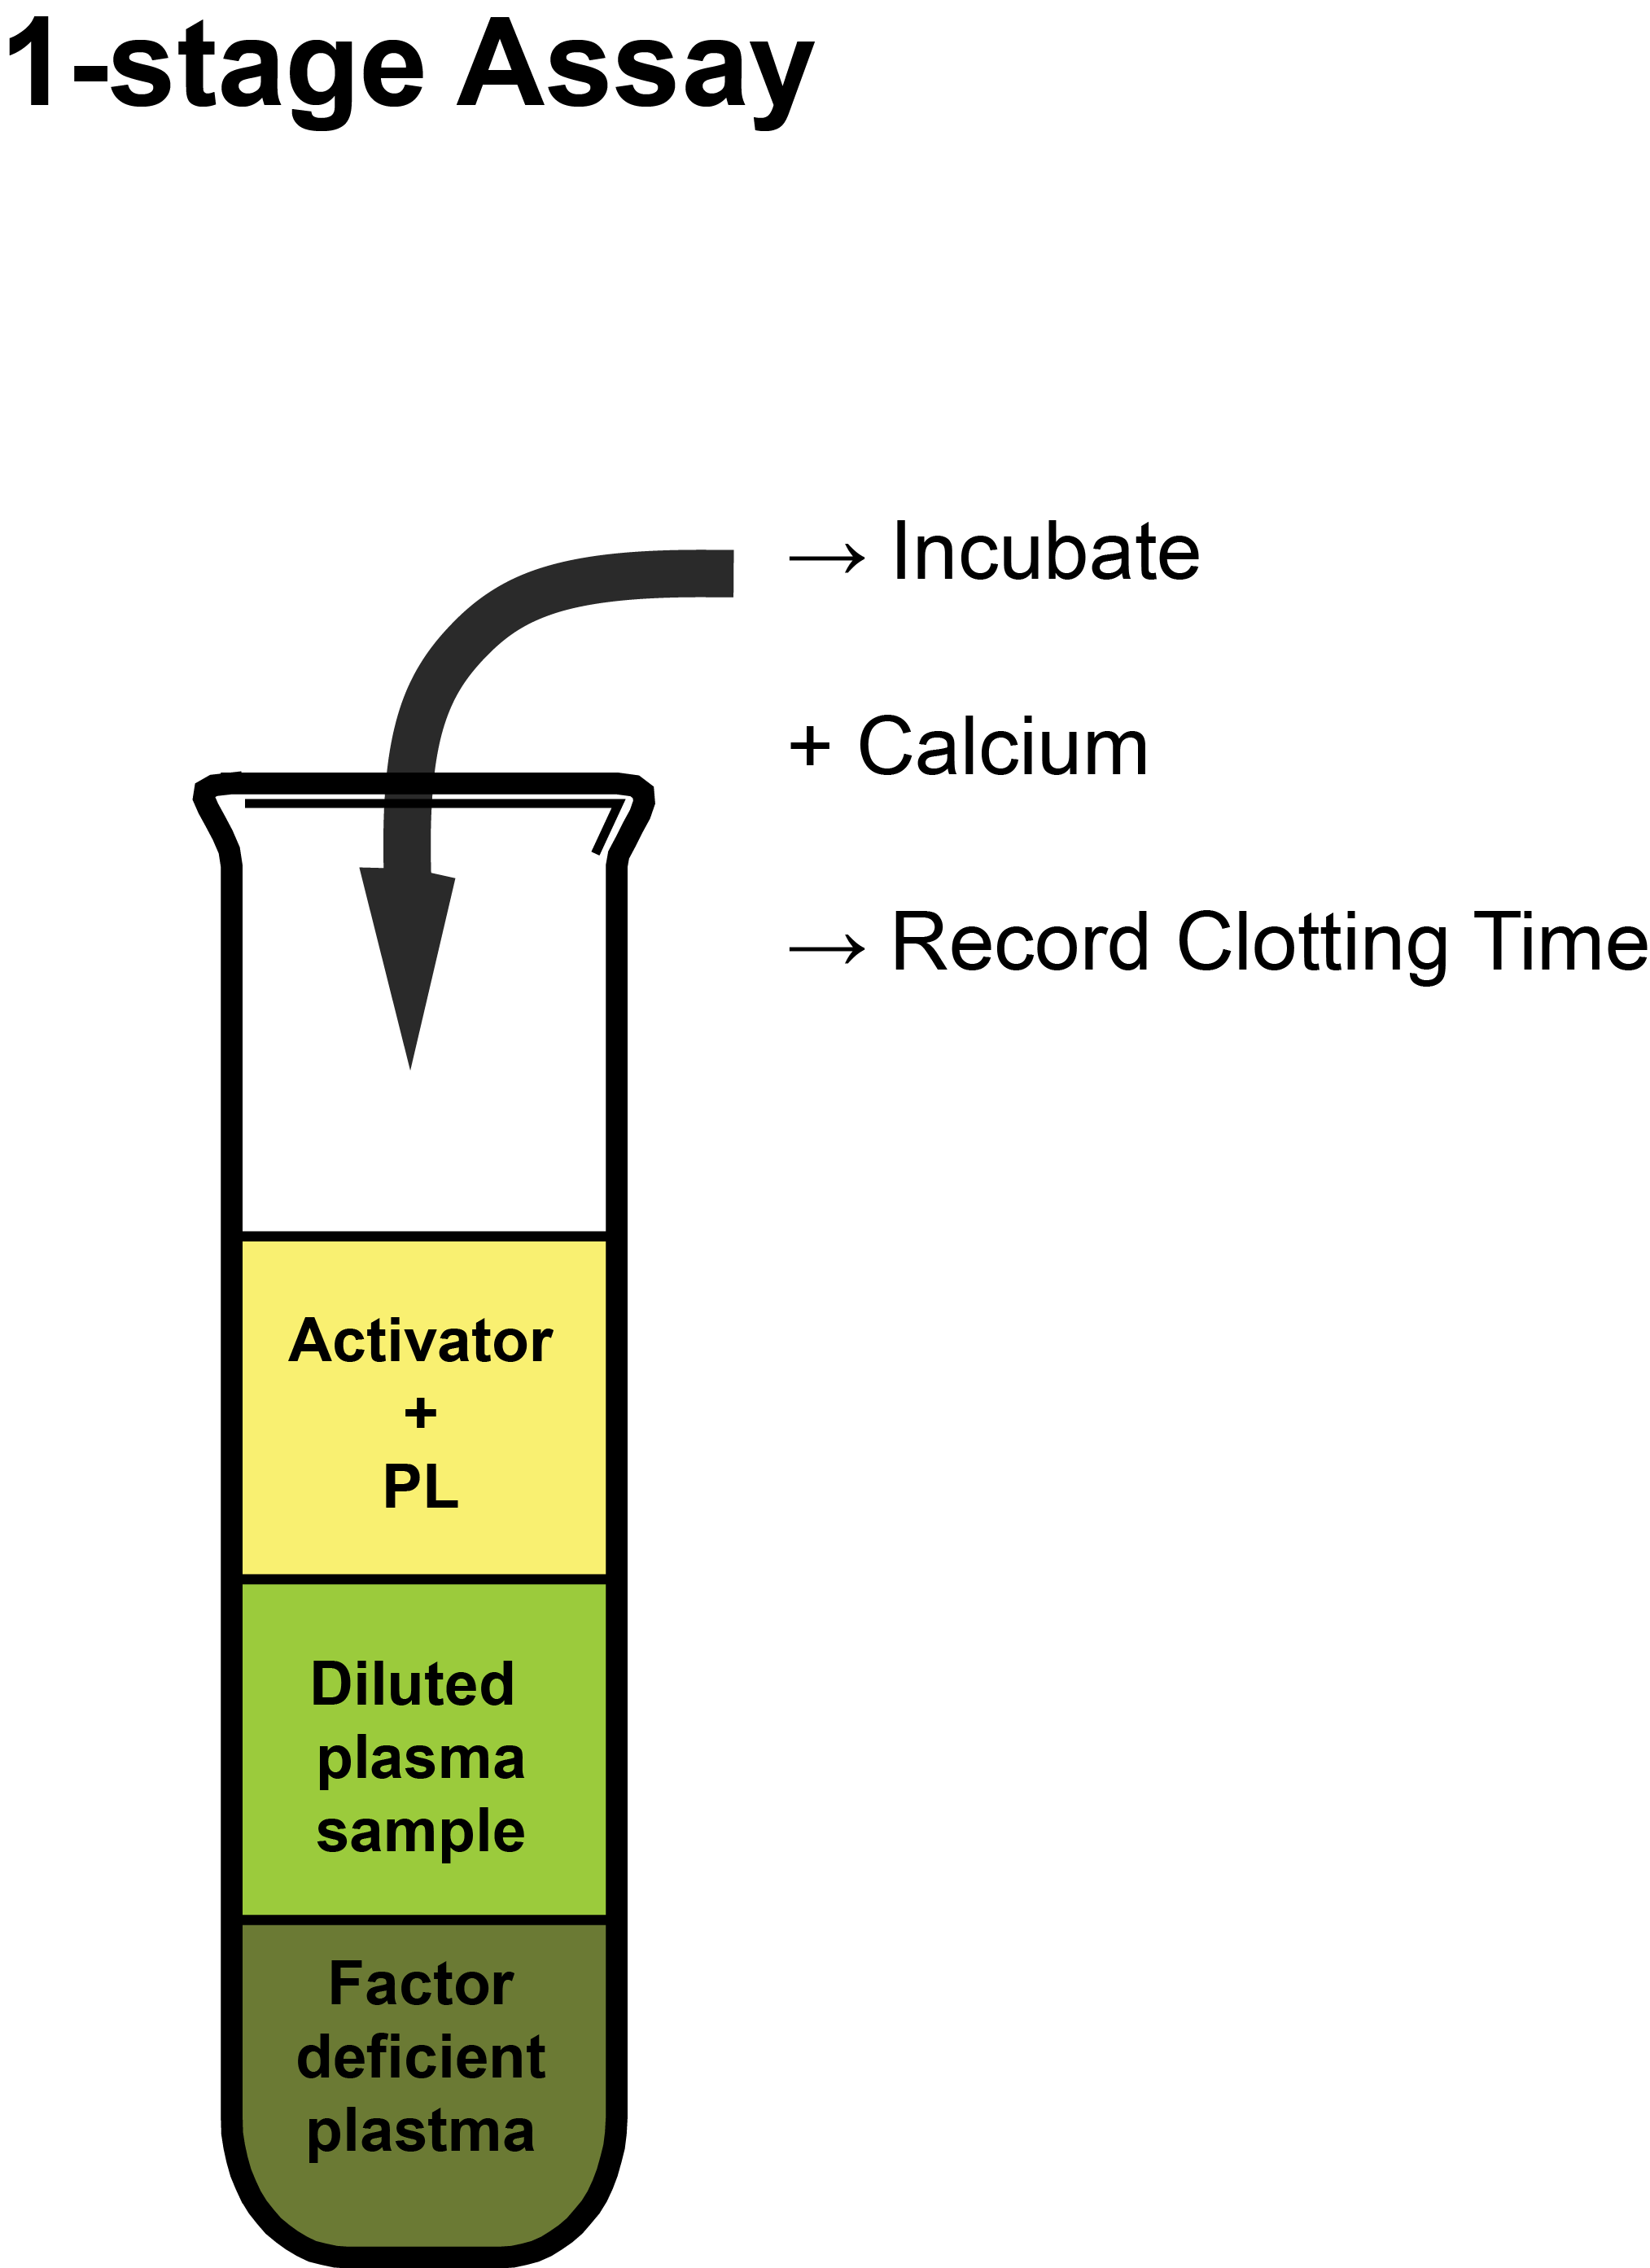 1-stage Assays - schematic